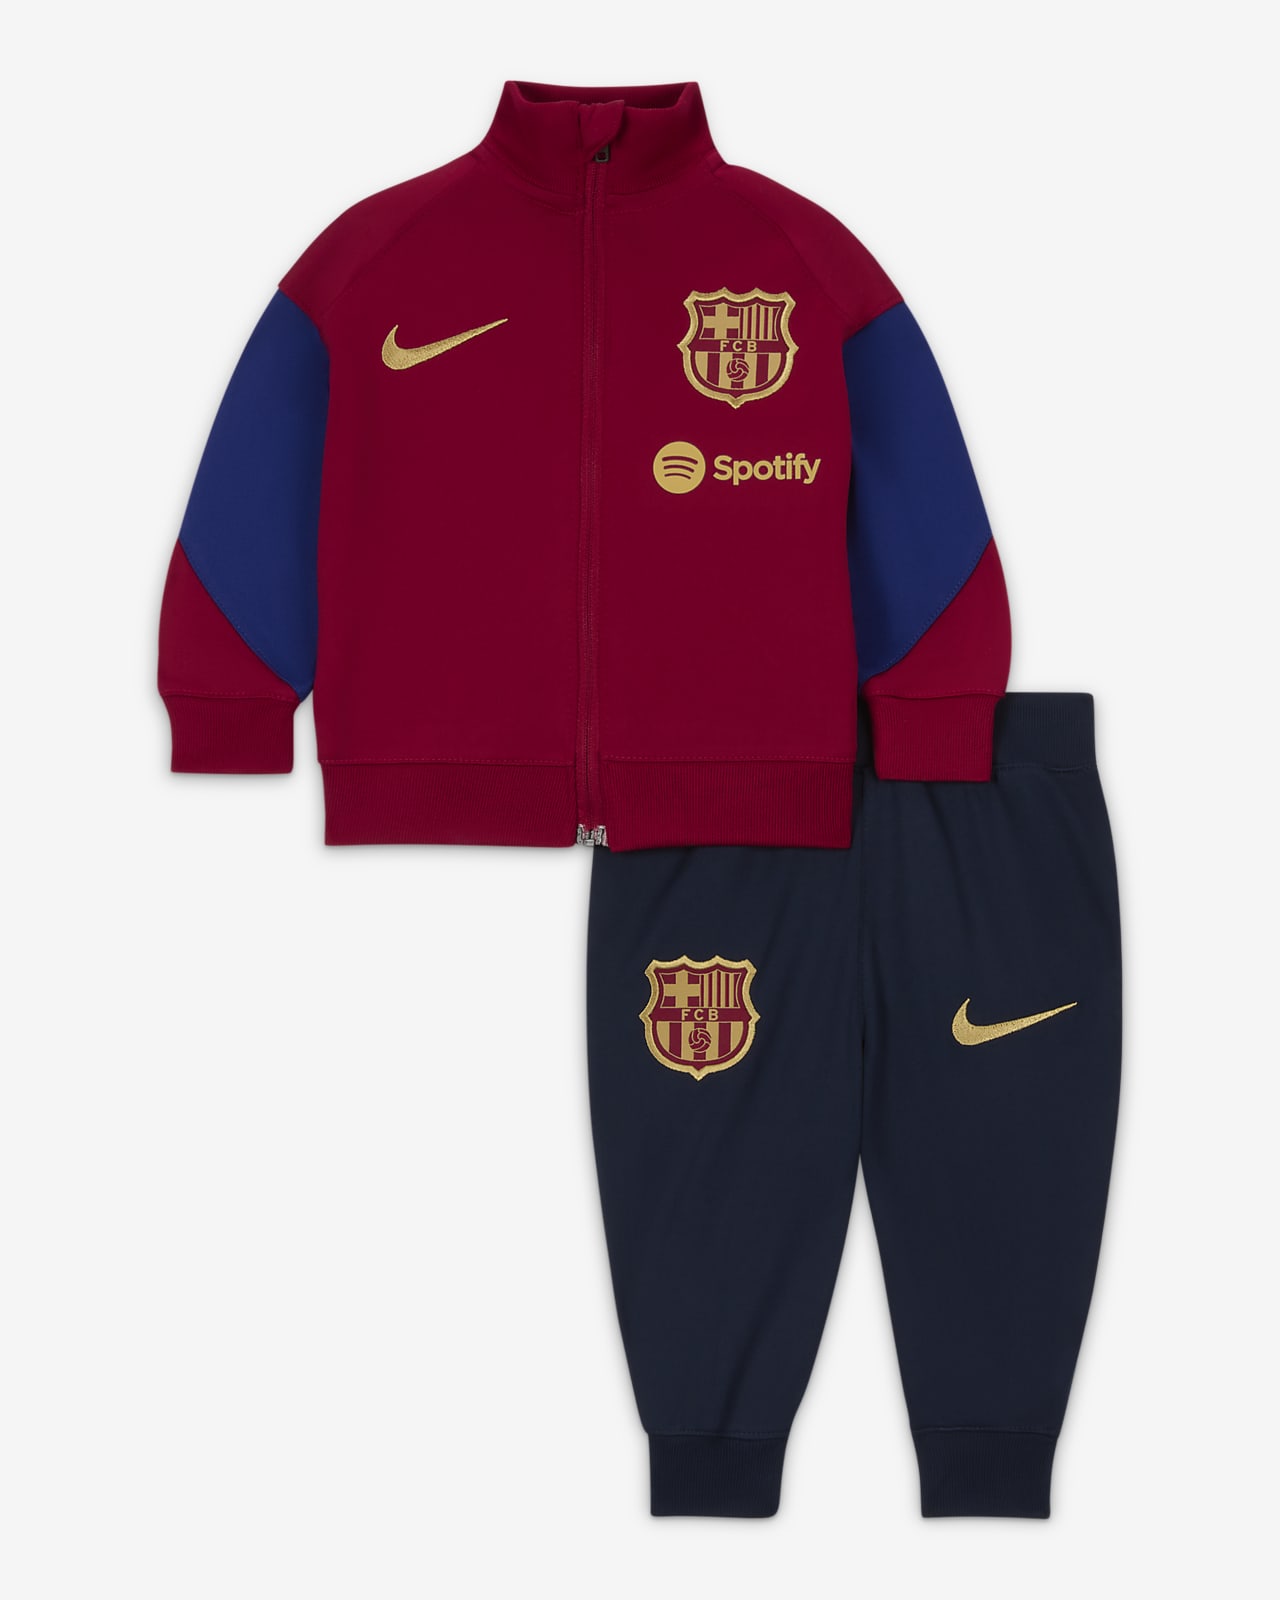 Ποδοσφαιρική φόρμα Nike Μπαρτσελόνα Strike για βρέφη